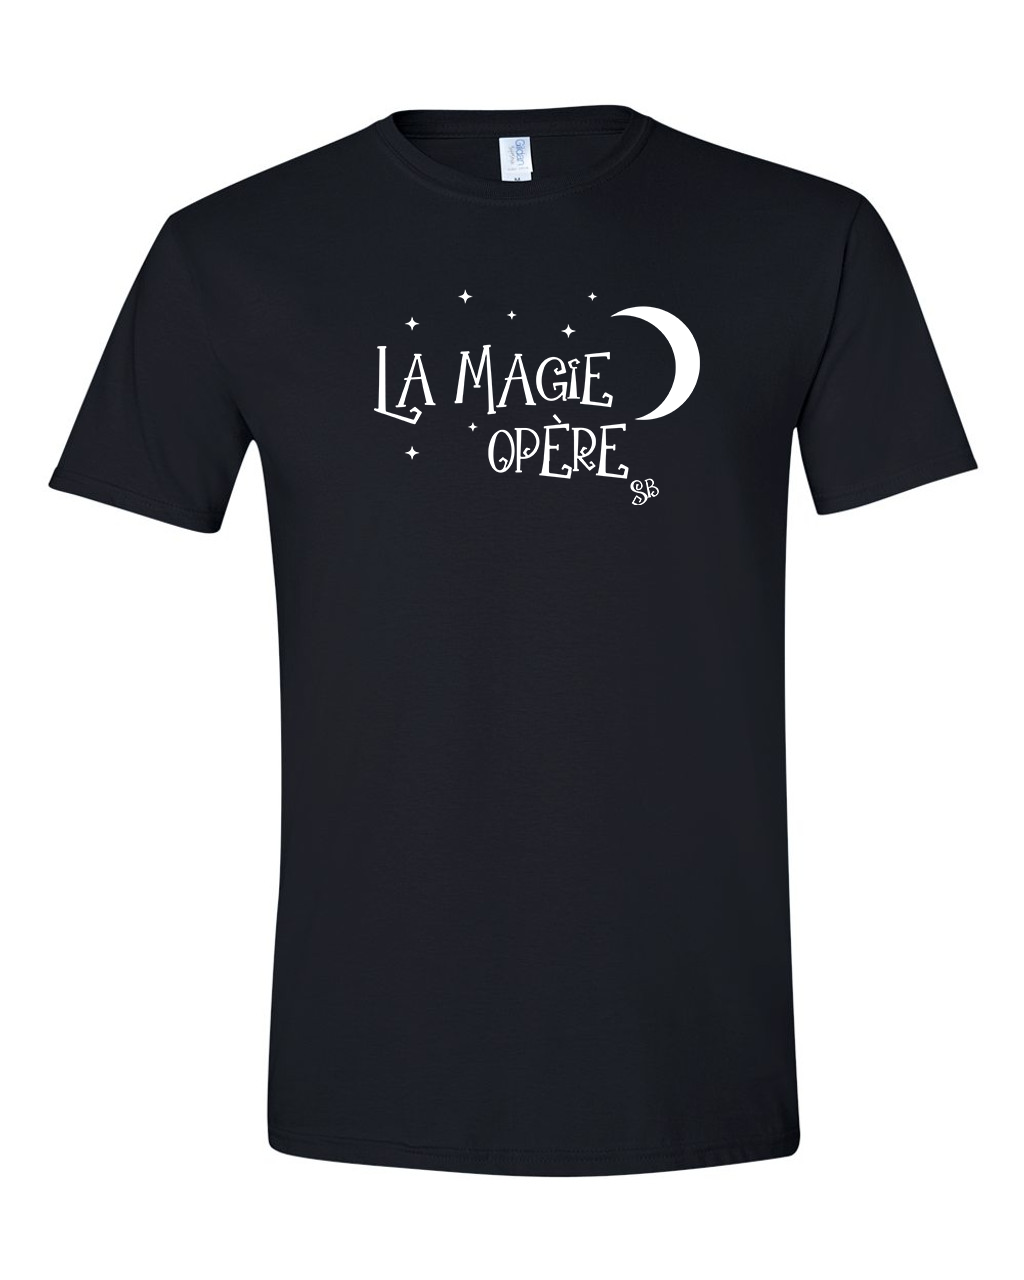 T-shirt - La magie opère